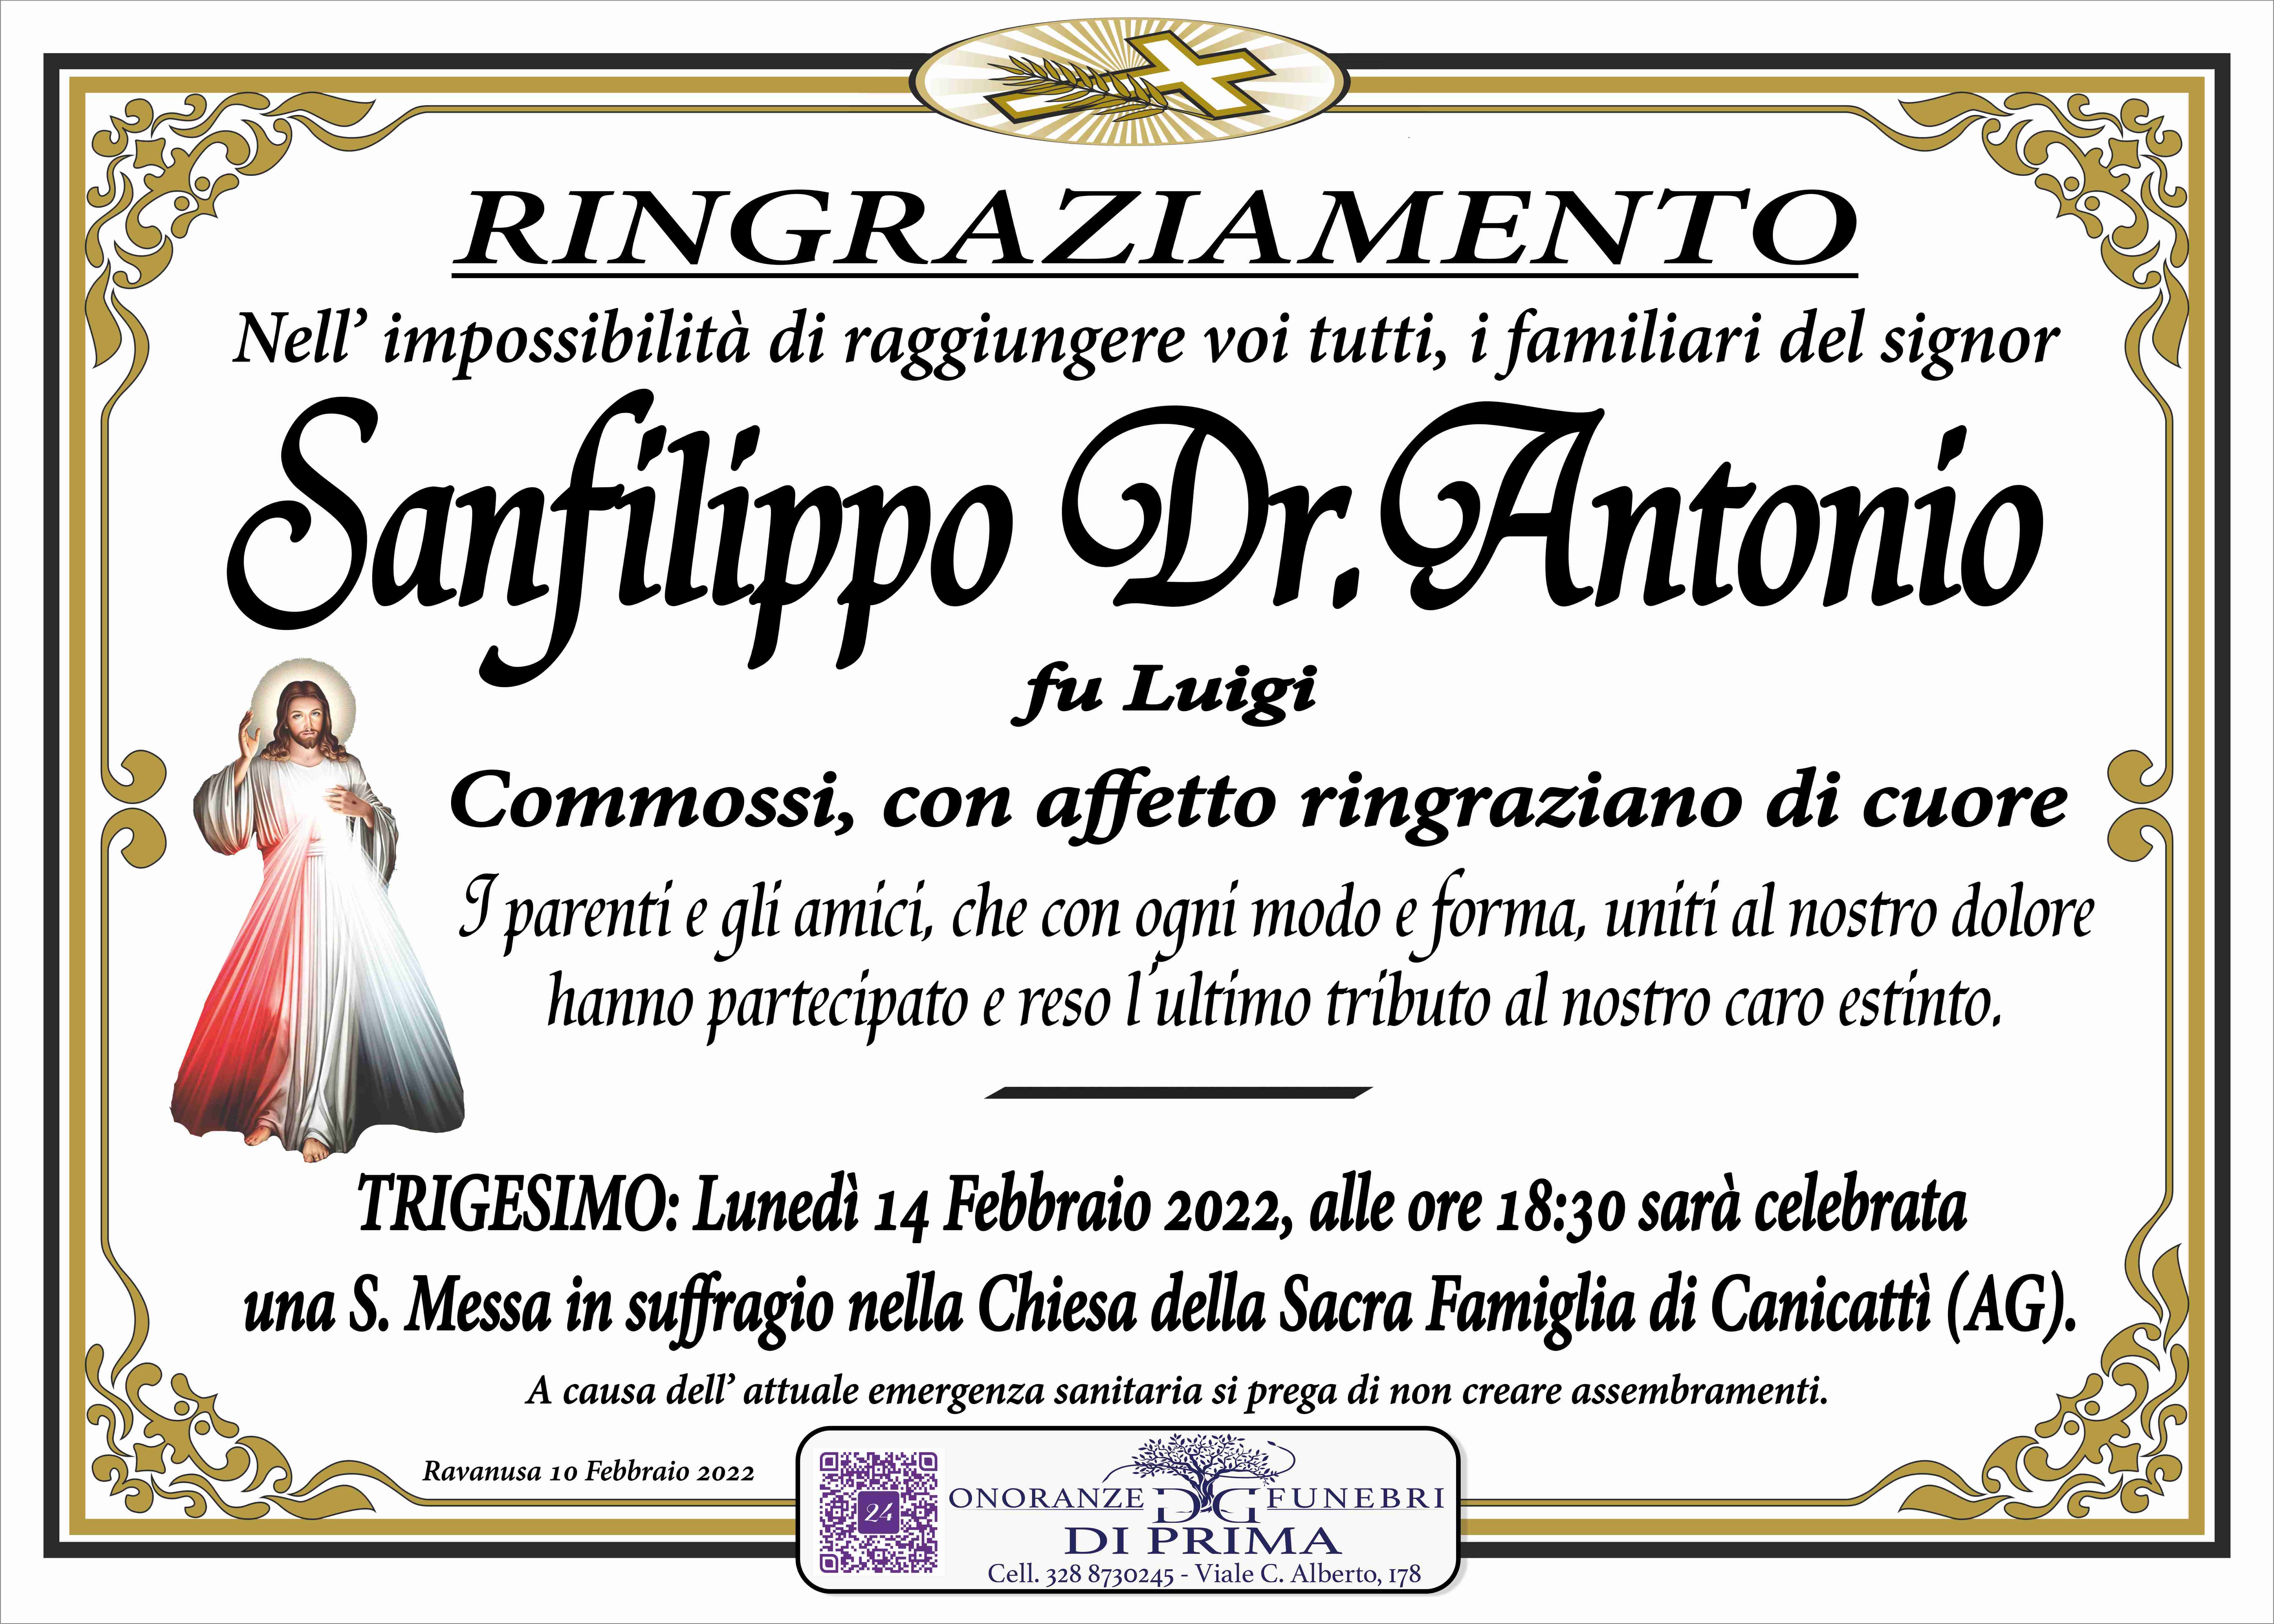 Antonio Sanfilippo